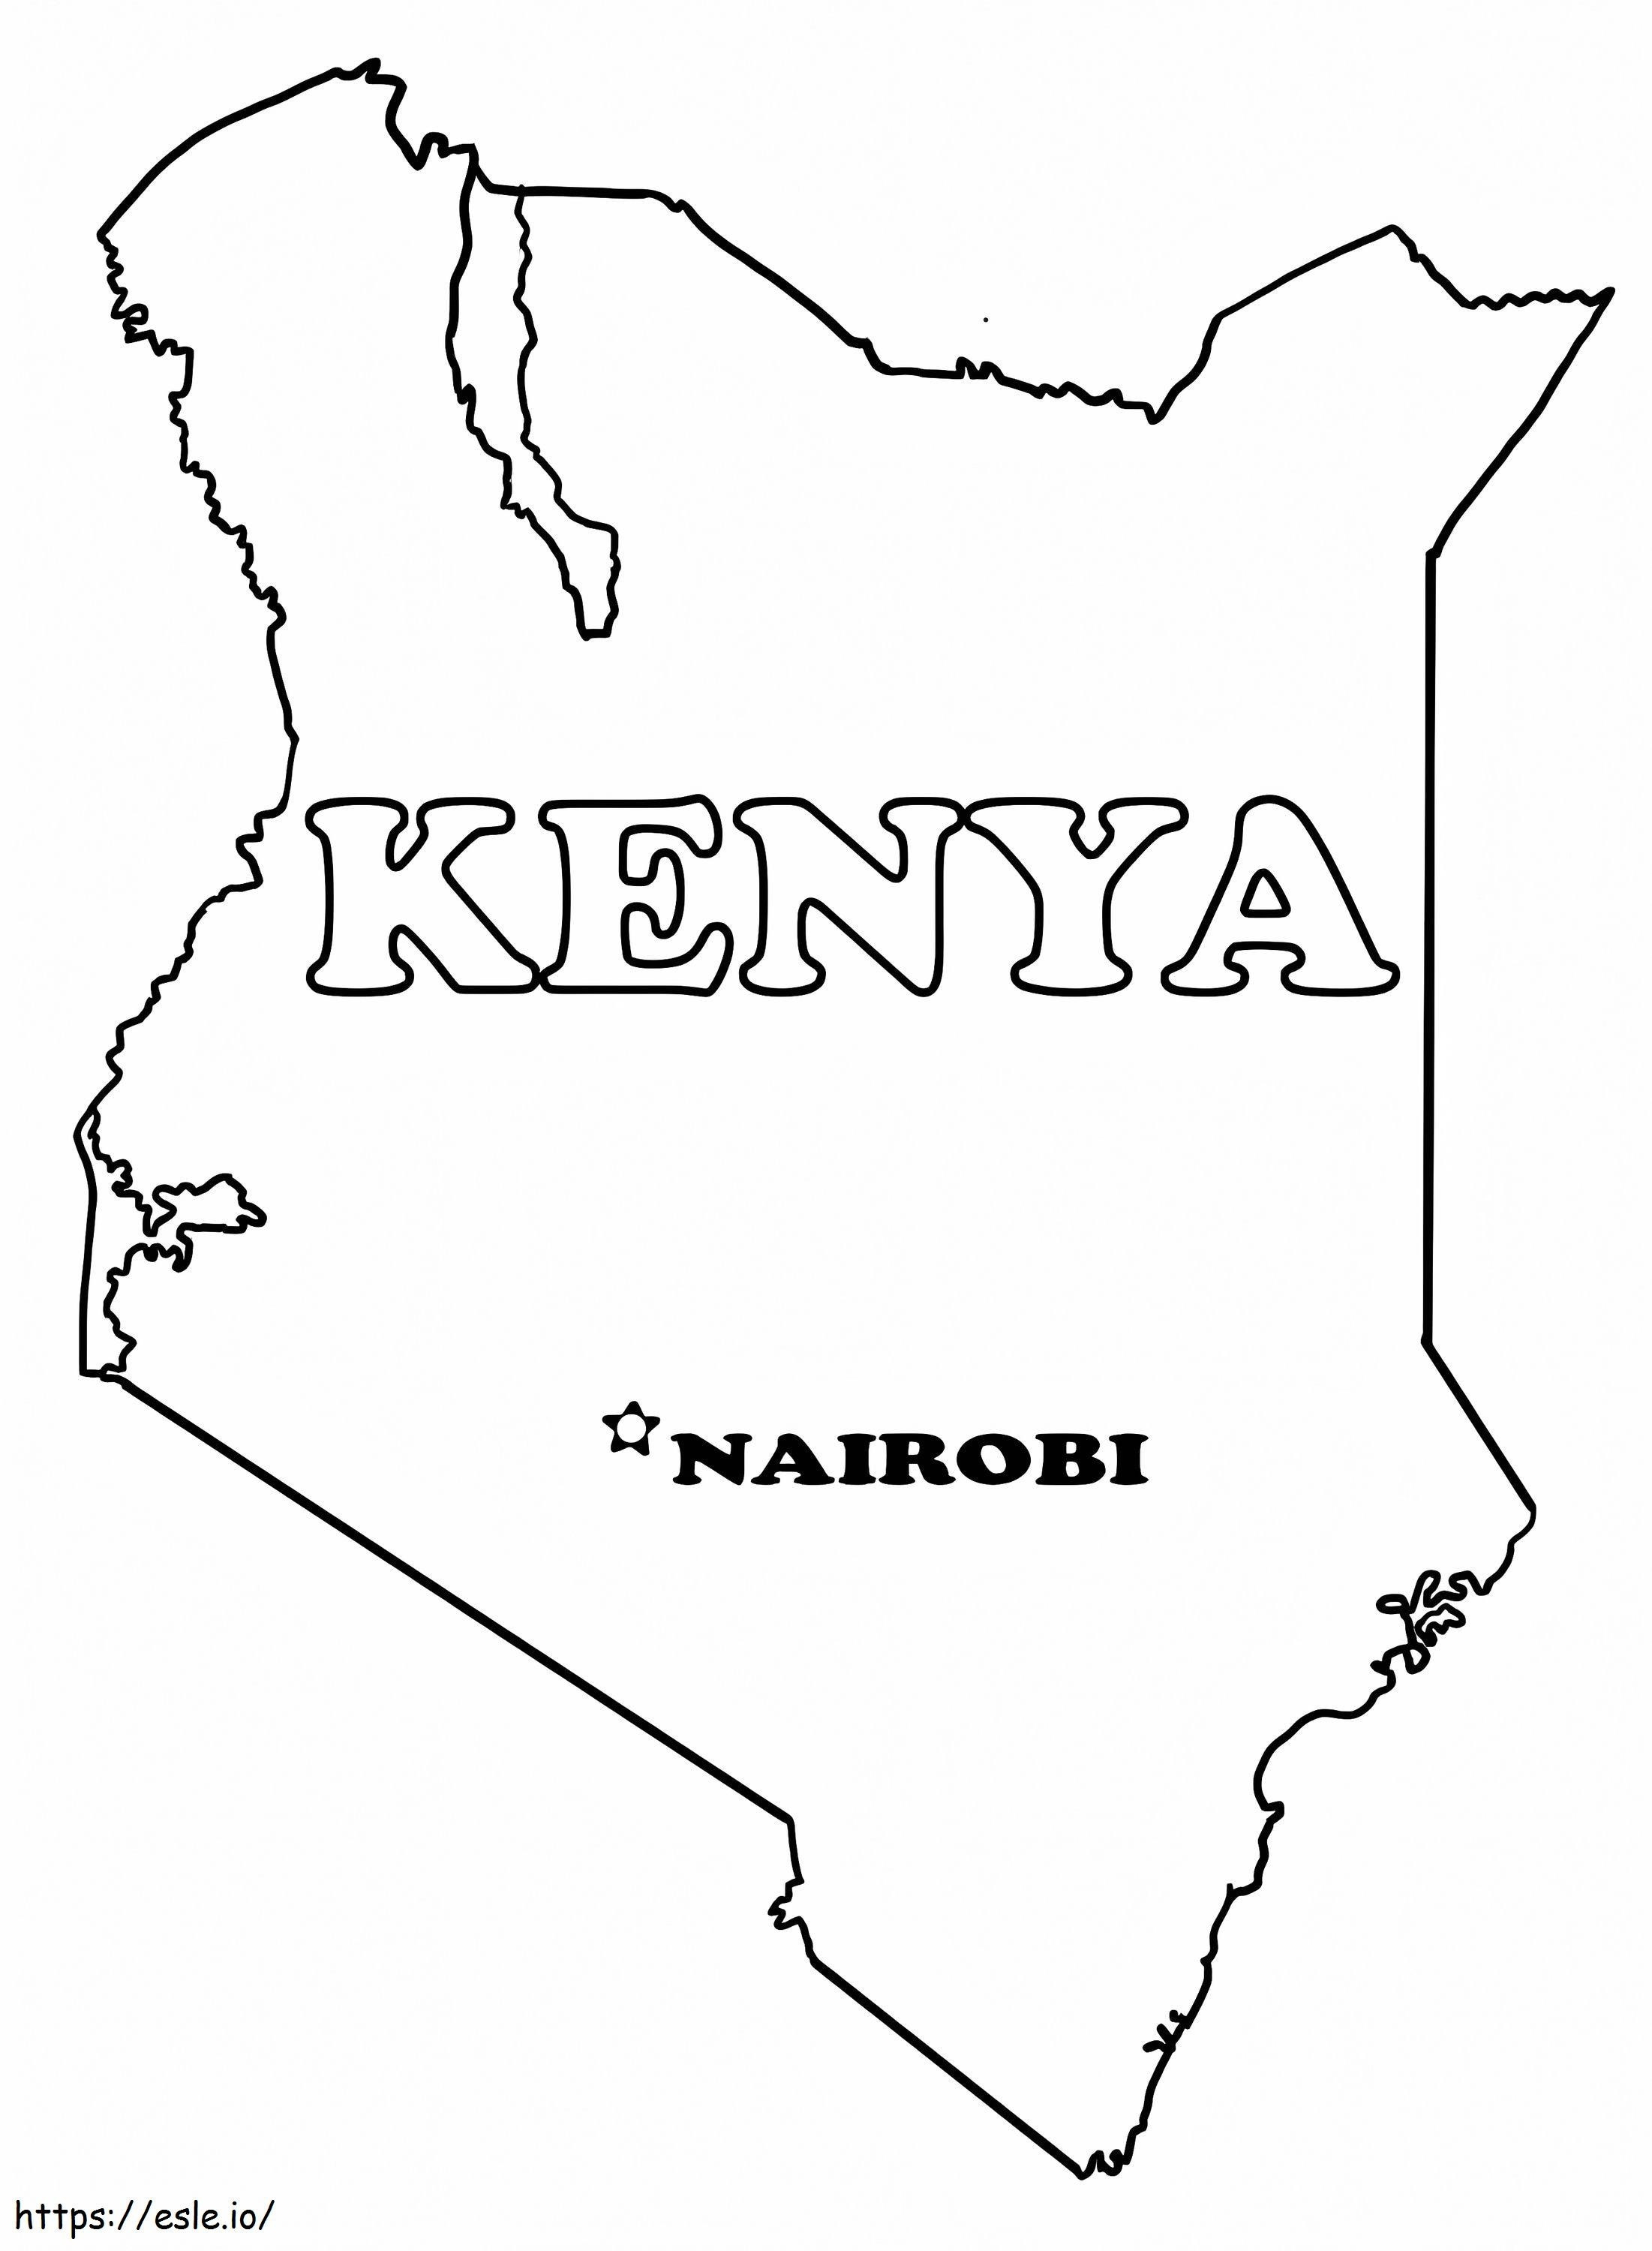 Mapa do Quênia para colorir